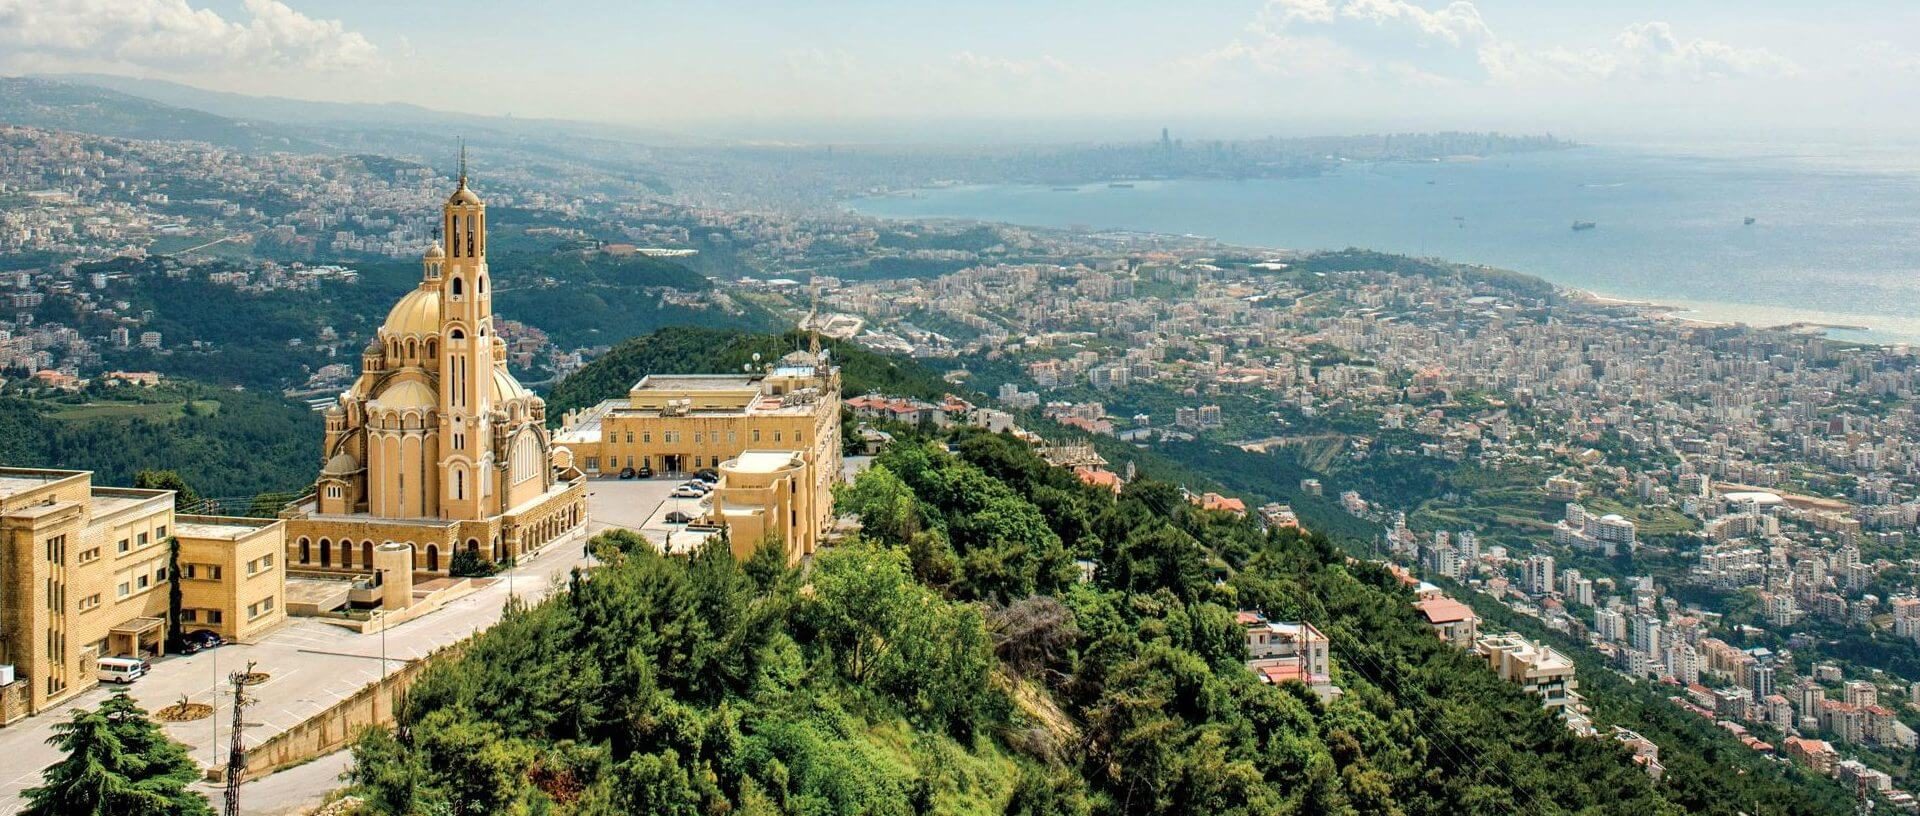 نمای هوایی از شهر بیروت در کشور لبنان